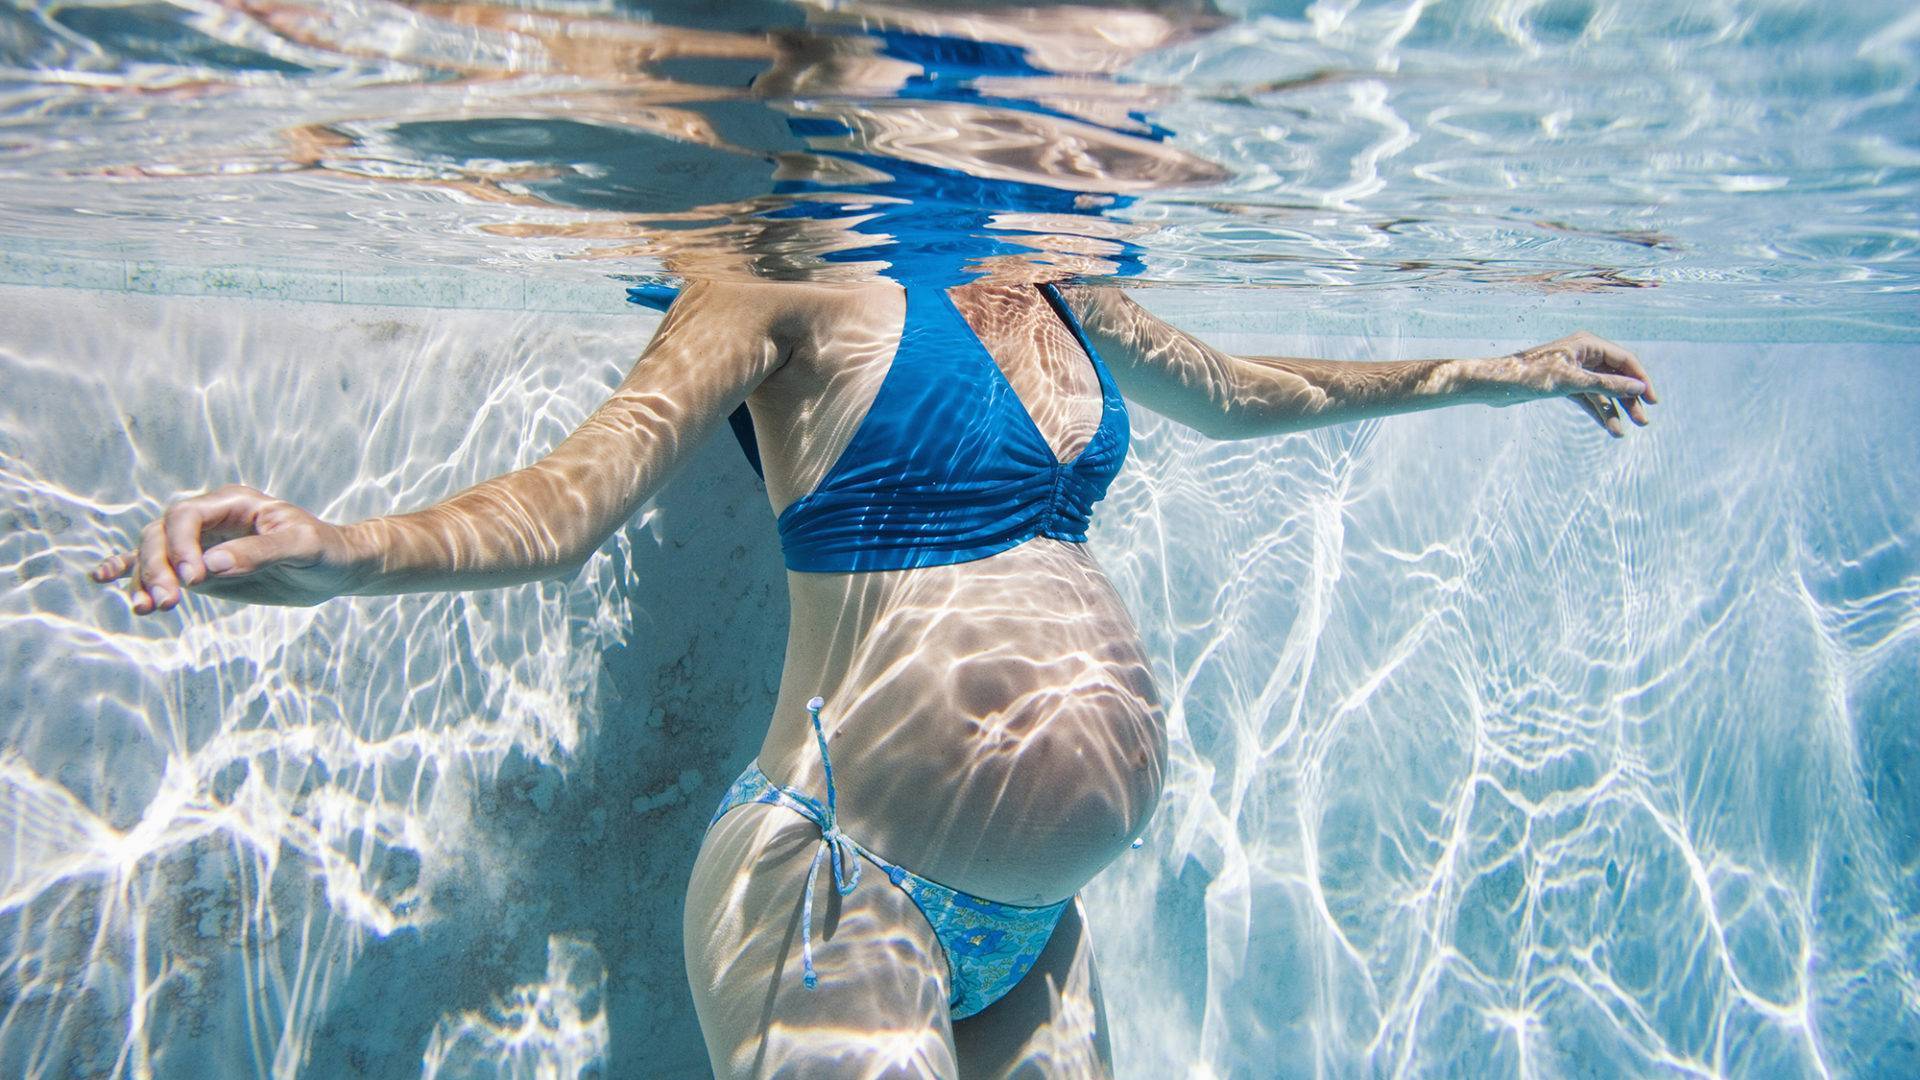 Можно беременным ходить в бассейн? плавание во время беременности – польза или вред?